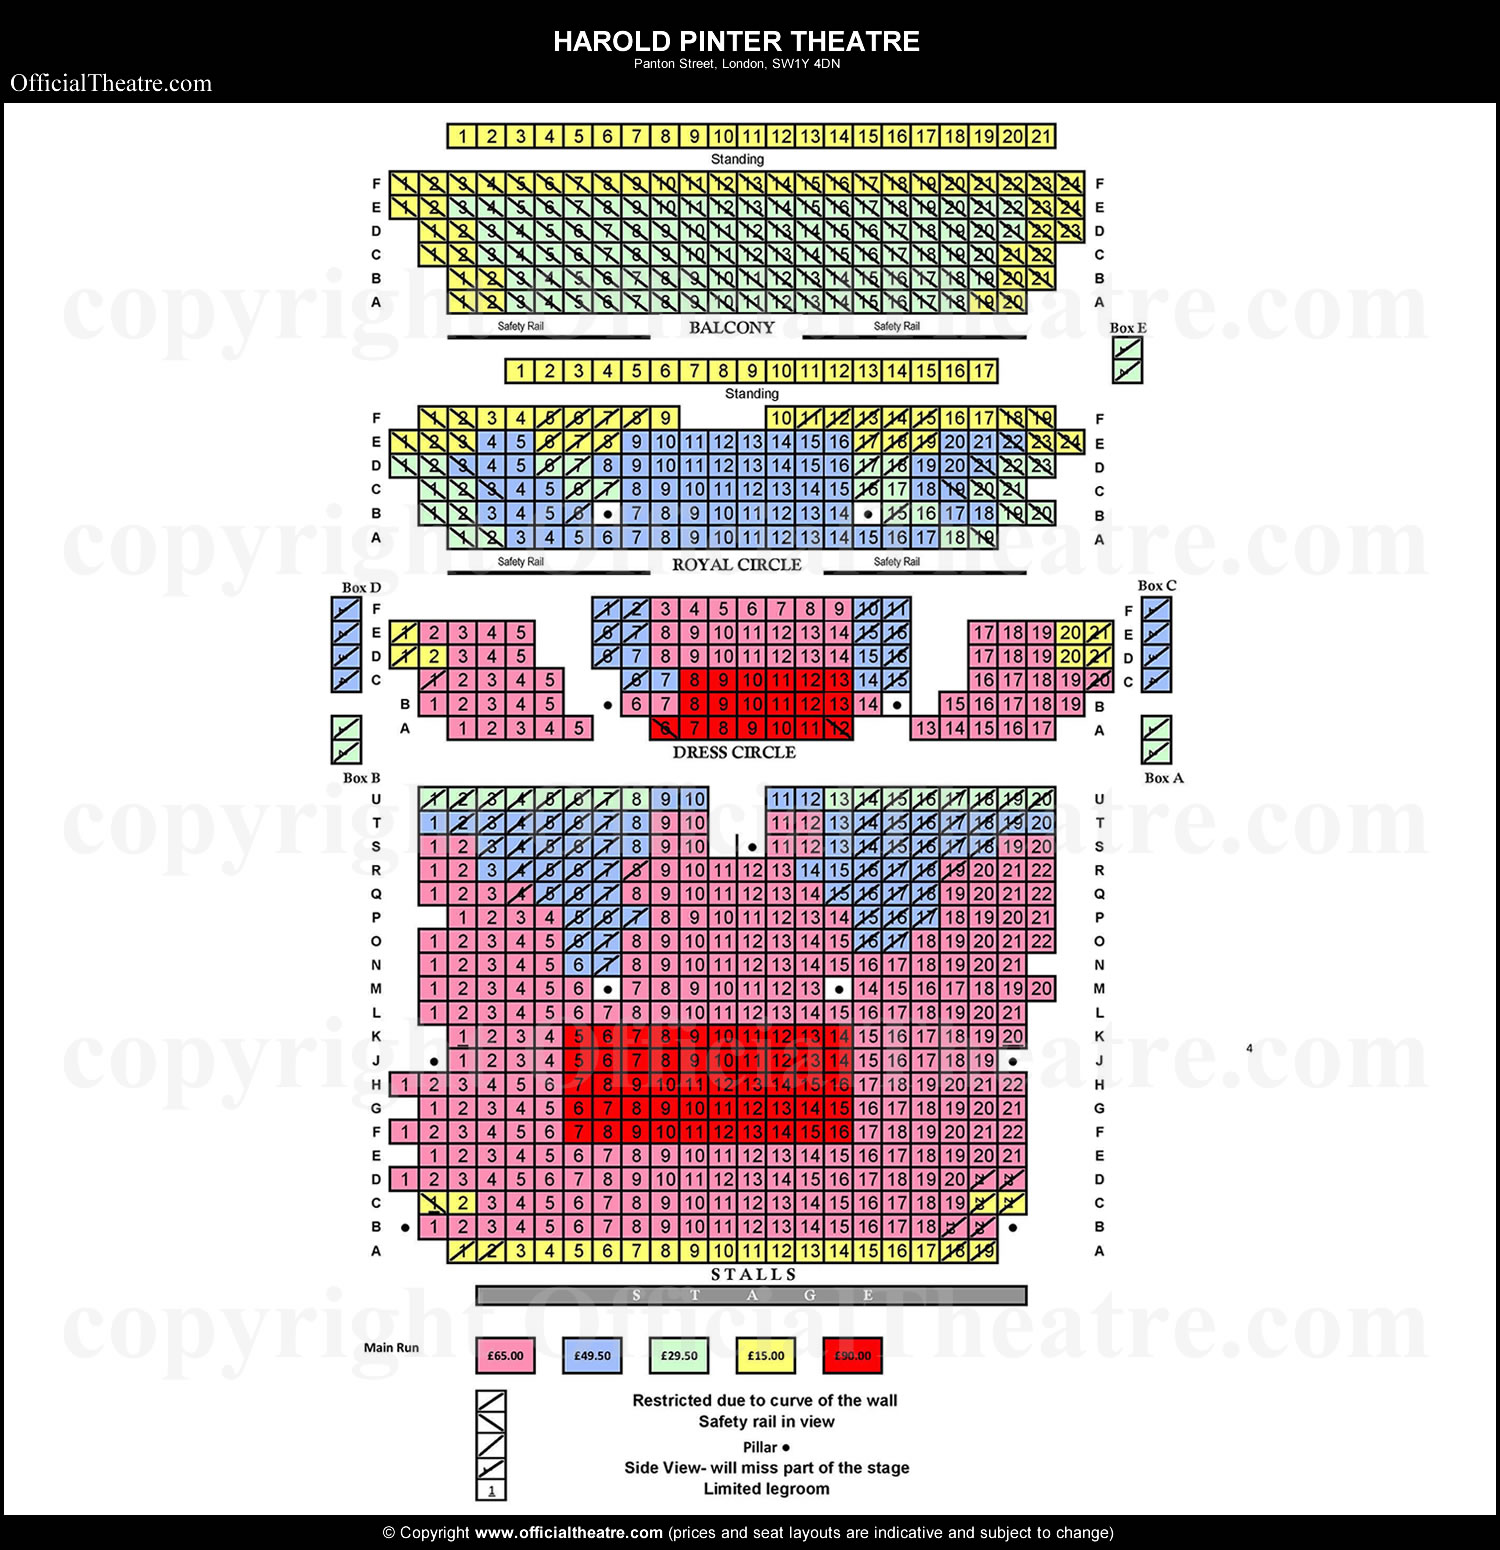 Harold Pinter Theatre seating plan